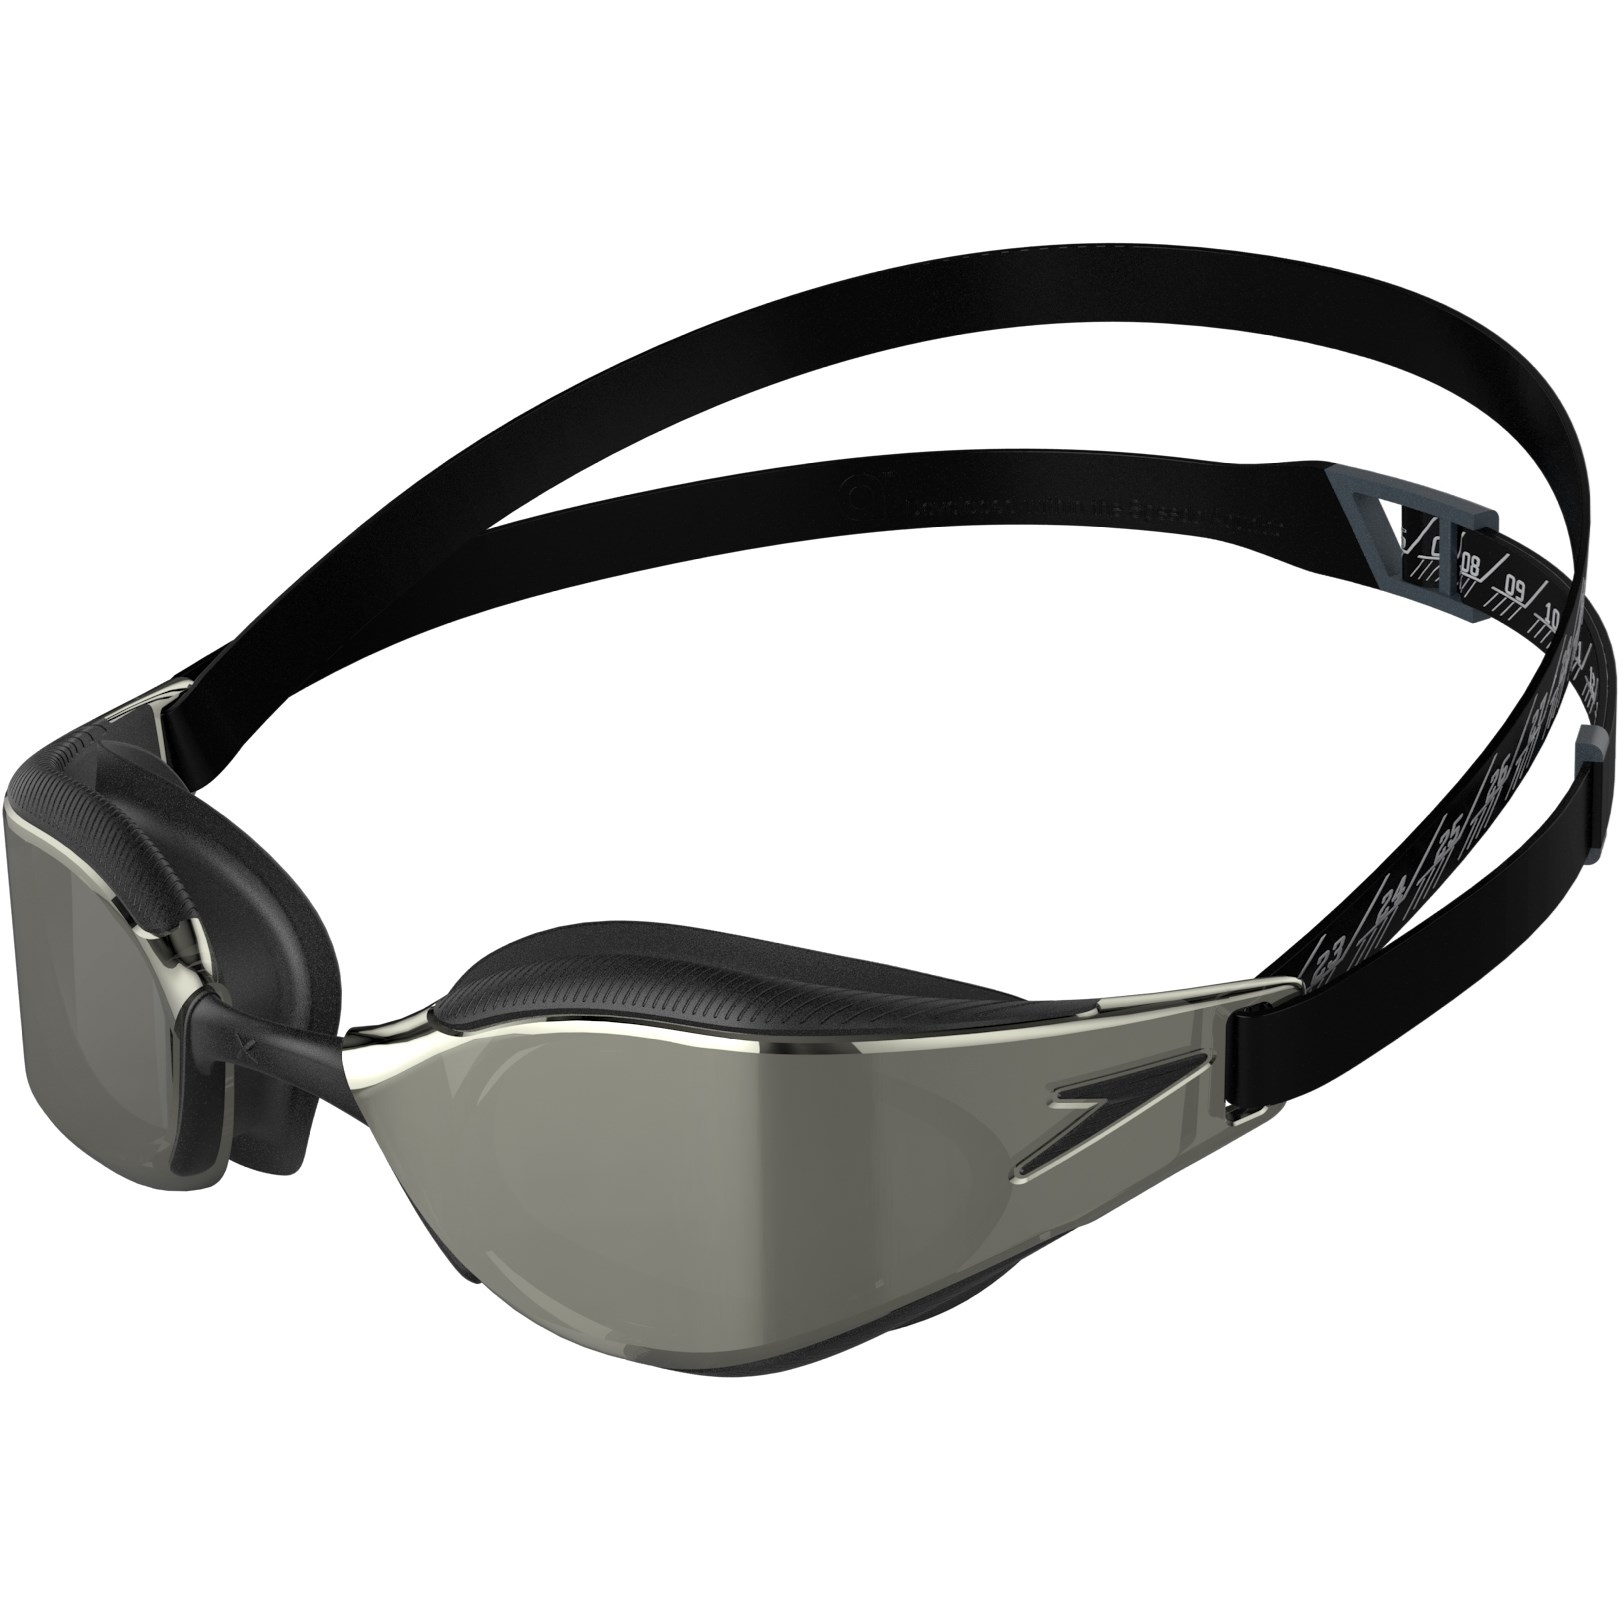 Productfoto van Speedo Fastskin Hyper Elite Gespiegeld Zwembril - black/oxid grey/chrome